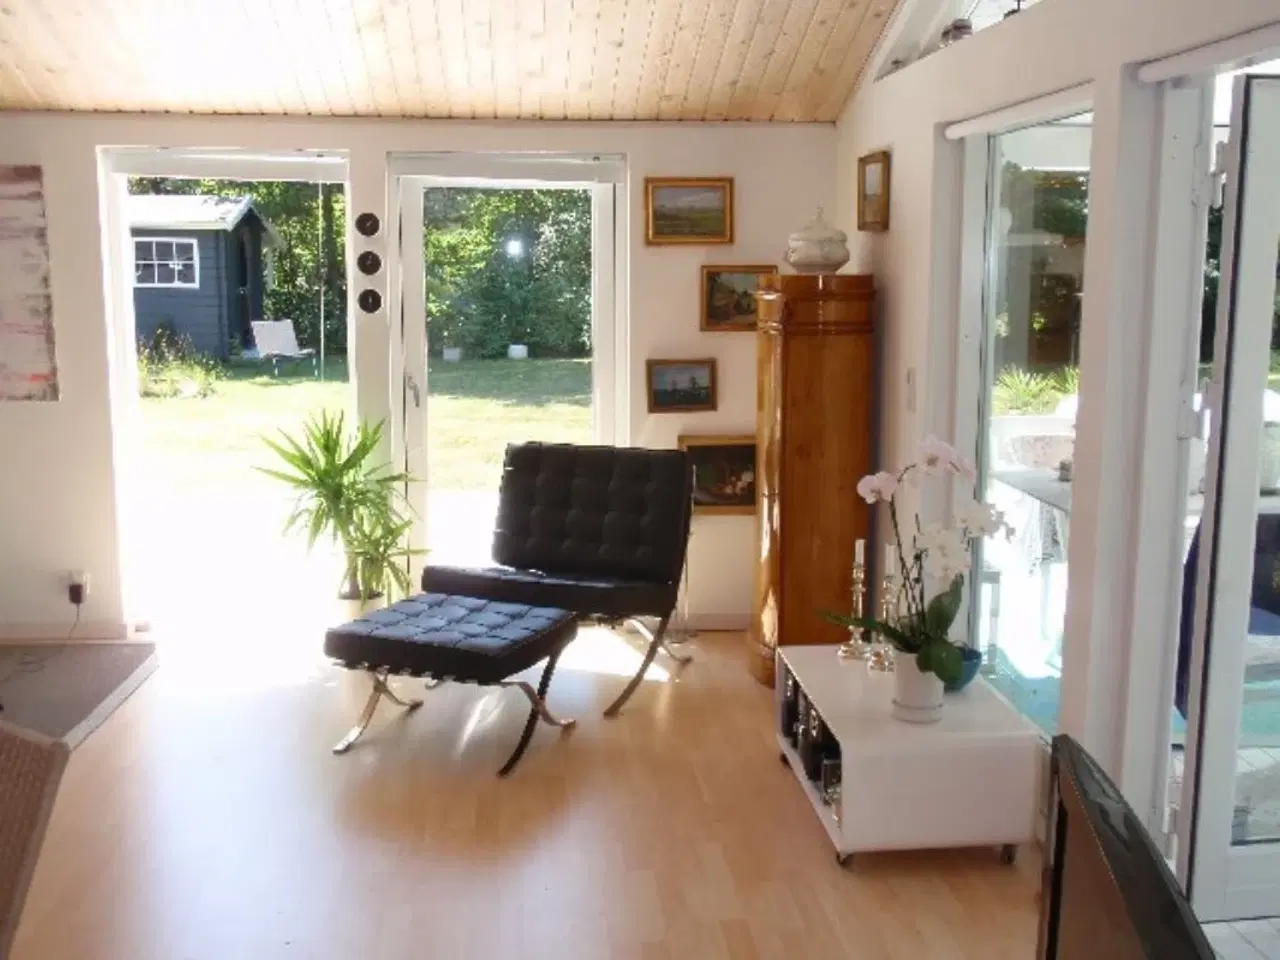 Billede 4 - Smagfuldt velindrettet sommerhus med plads til 6 personer ved et af danskernes foretrukne feriemål